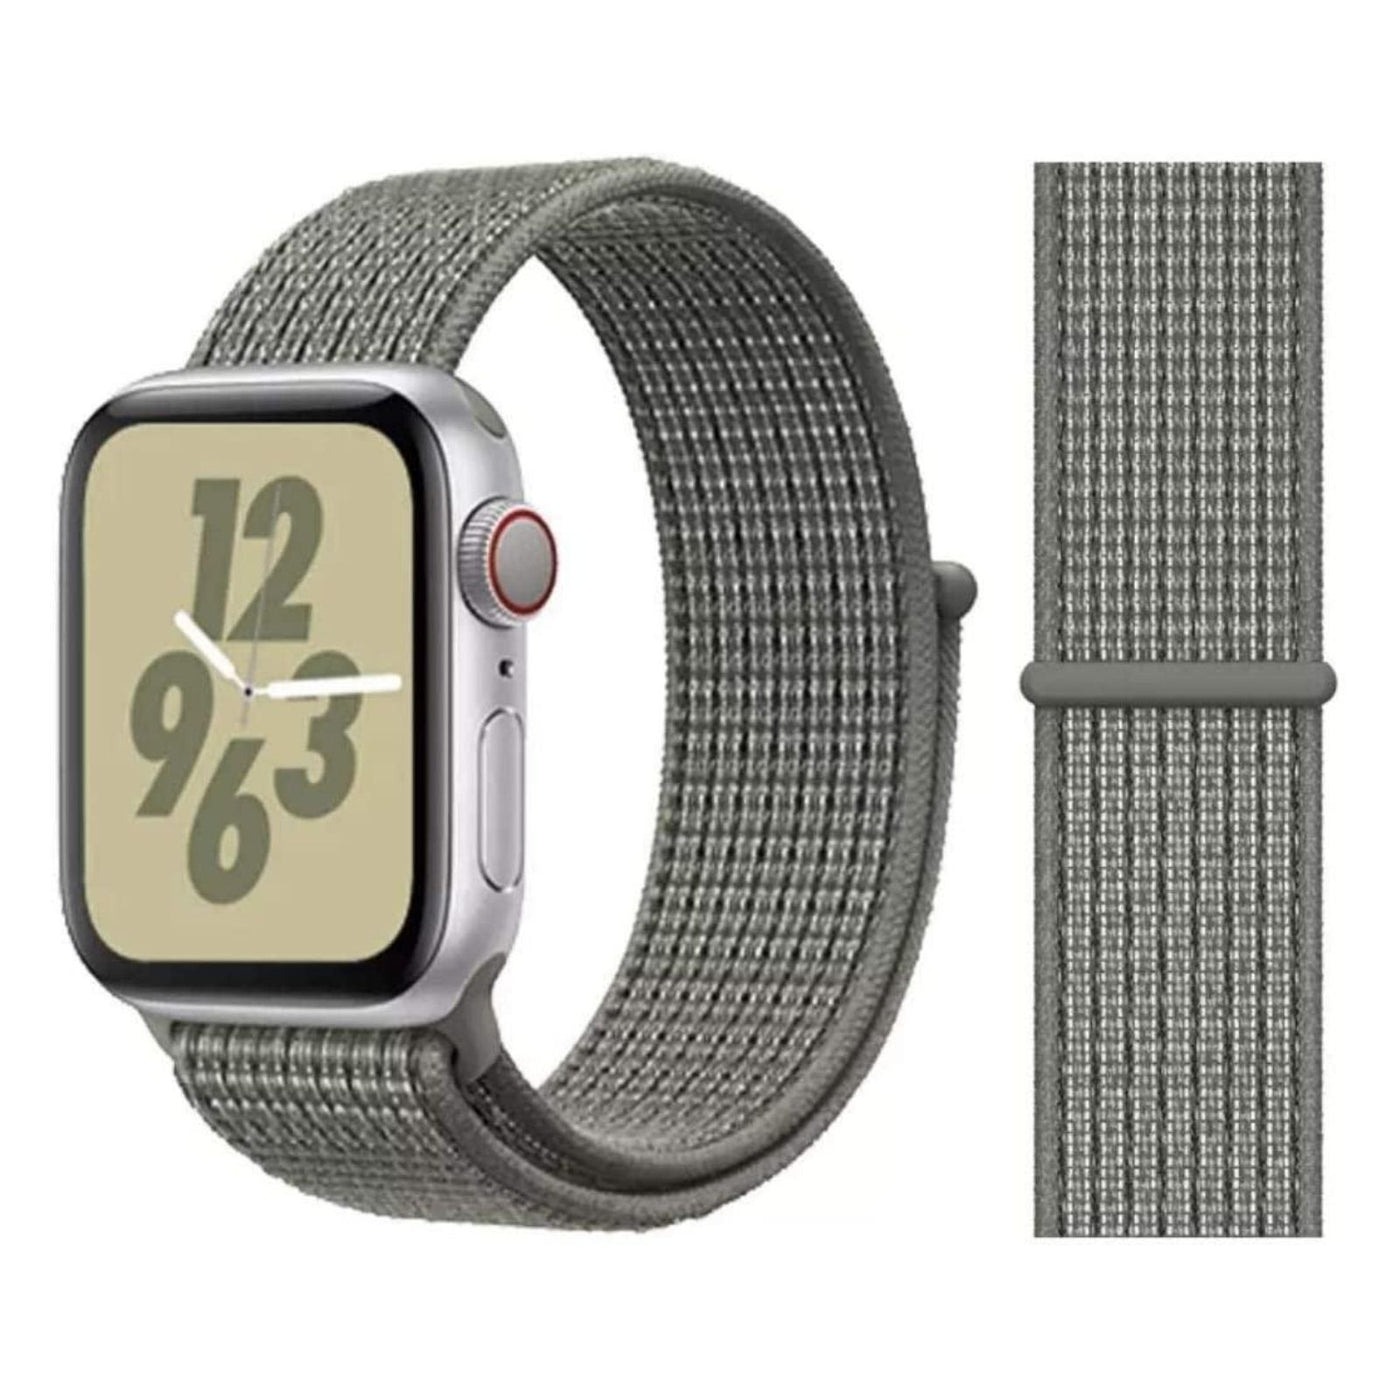 ALK Classic Nylon Band for Apple Watch in Spruce Fog - Alk Designs